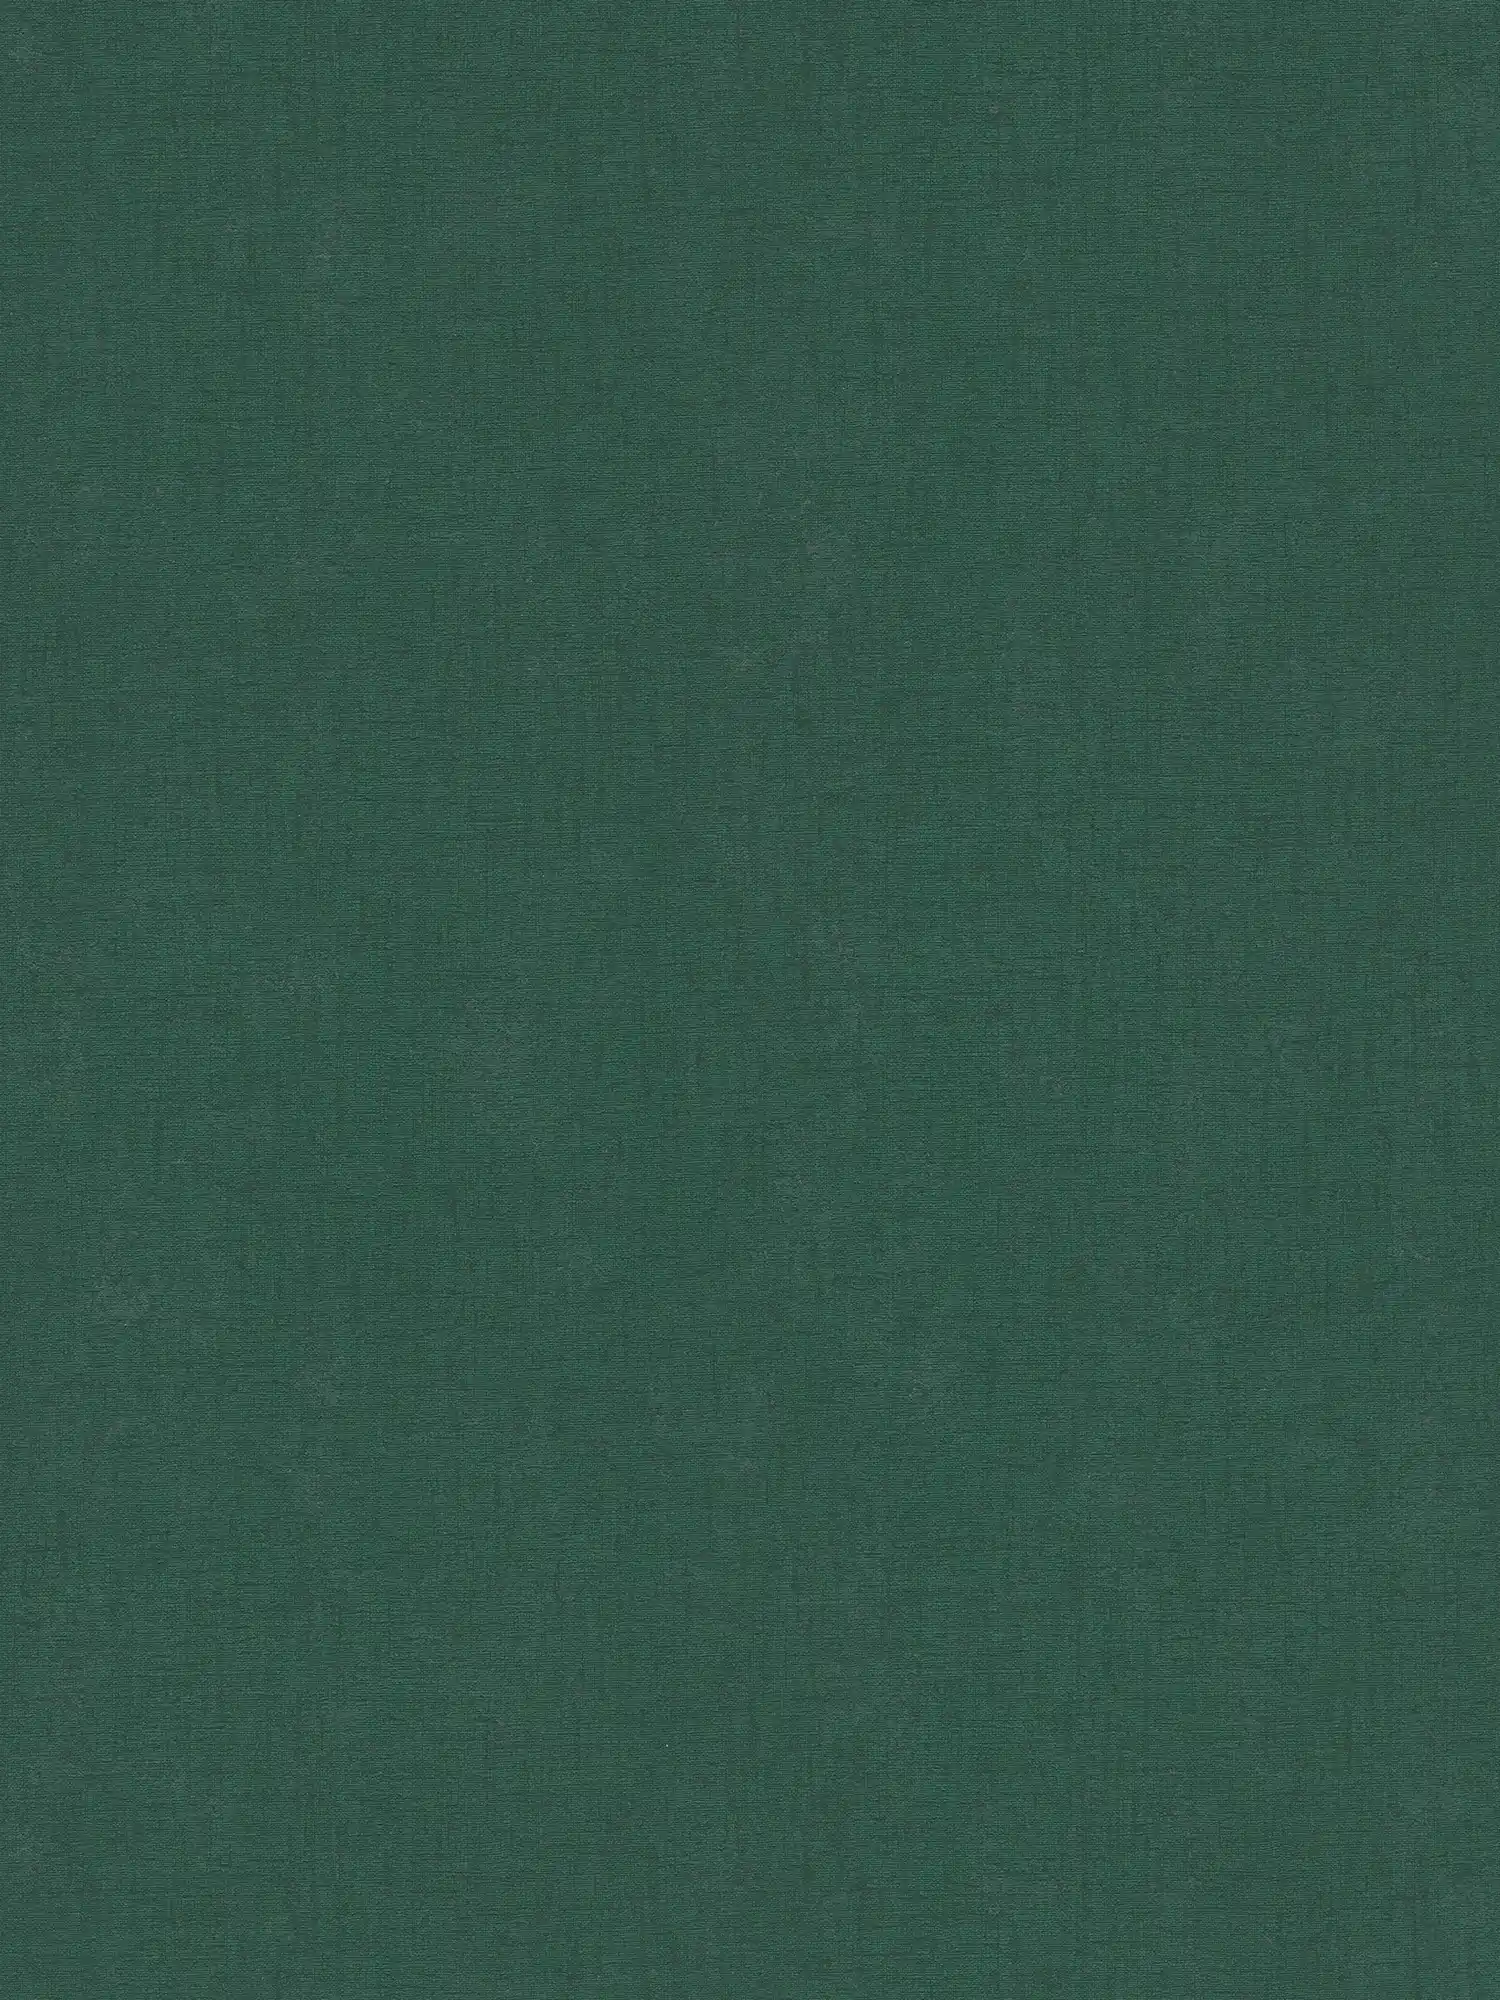 Einfarbige Vliestapete mit leichter Struktur – Grün, Dunkelgrün
